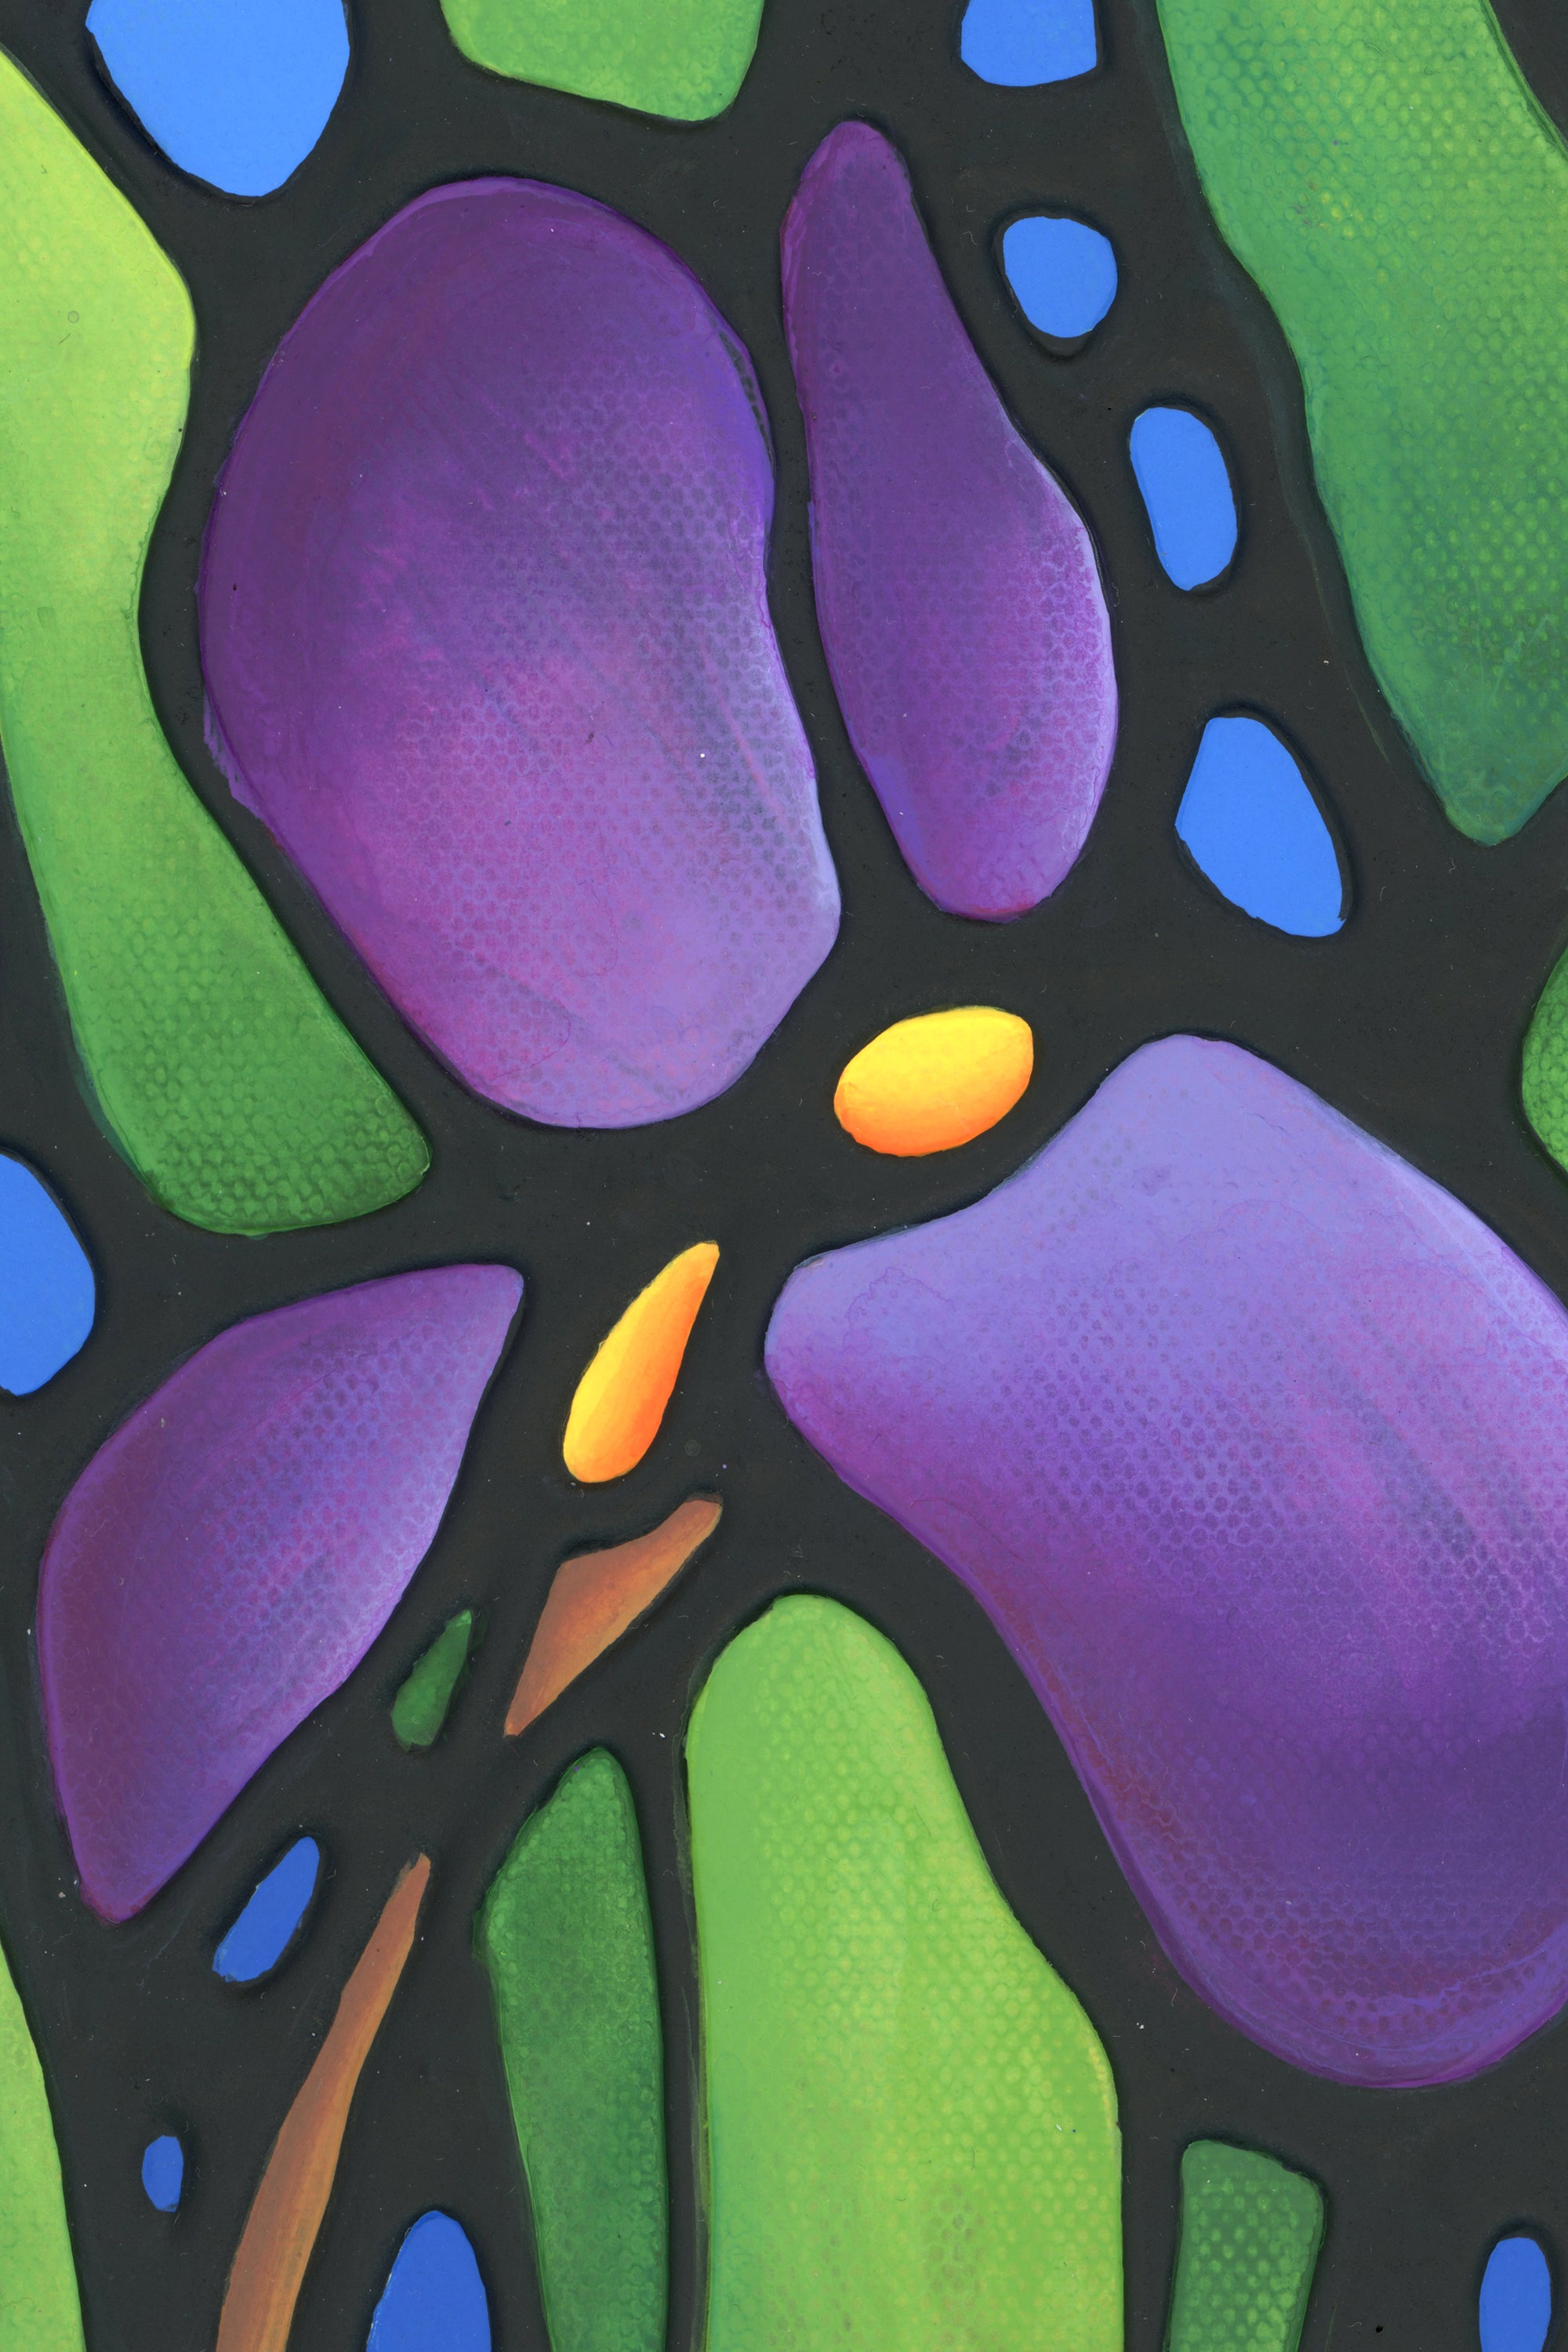 Purple Iris Flowers Original Painting 8" x 16"